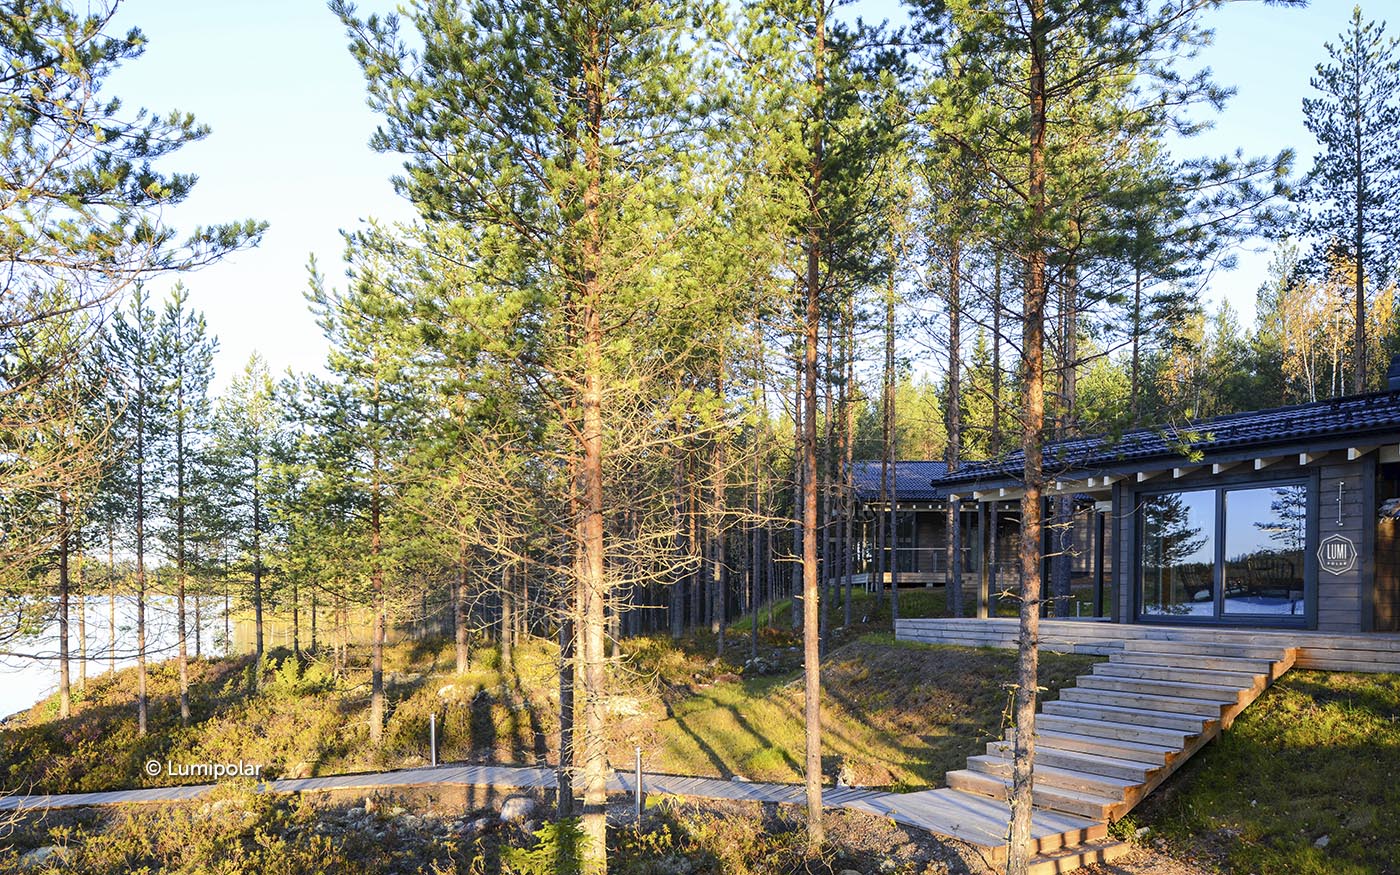  Выбор участка для строительства финского дома Lumi Polar